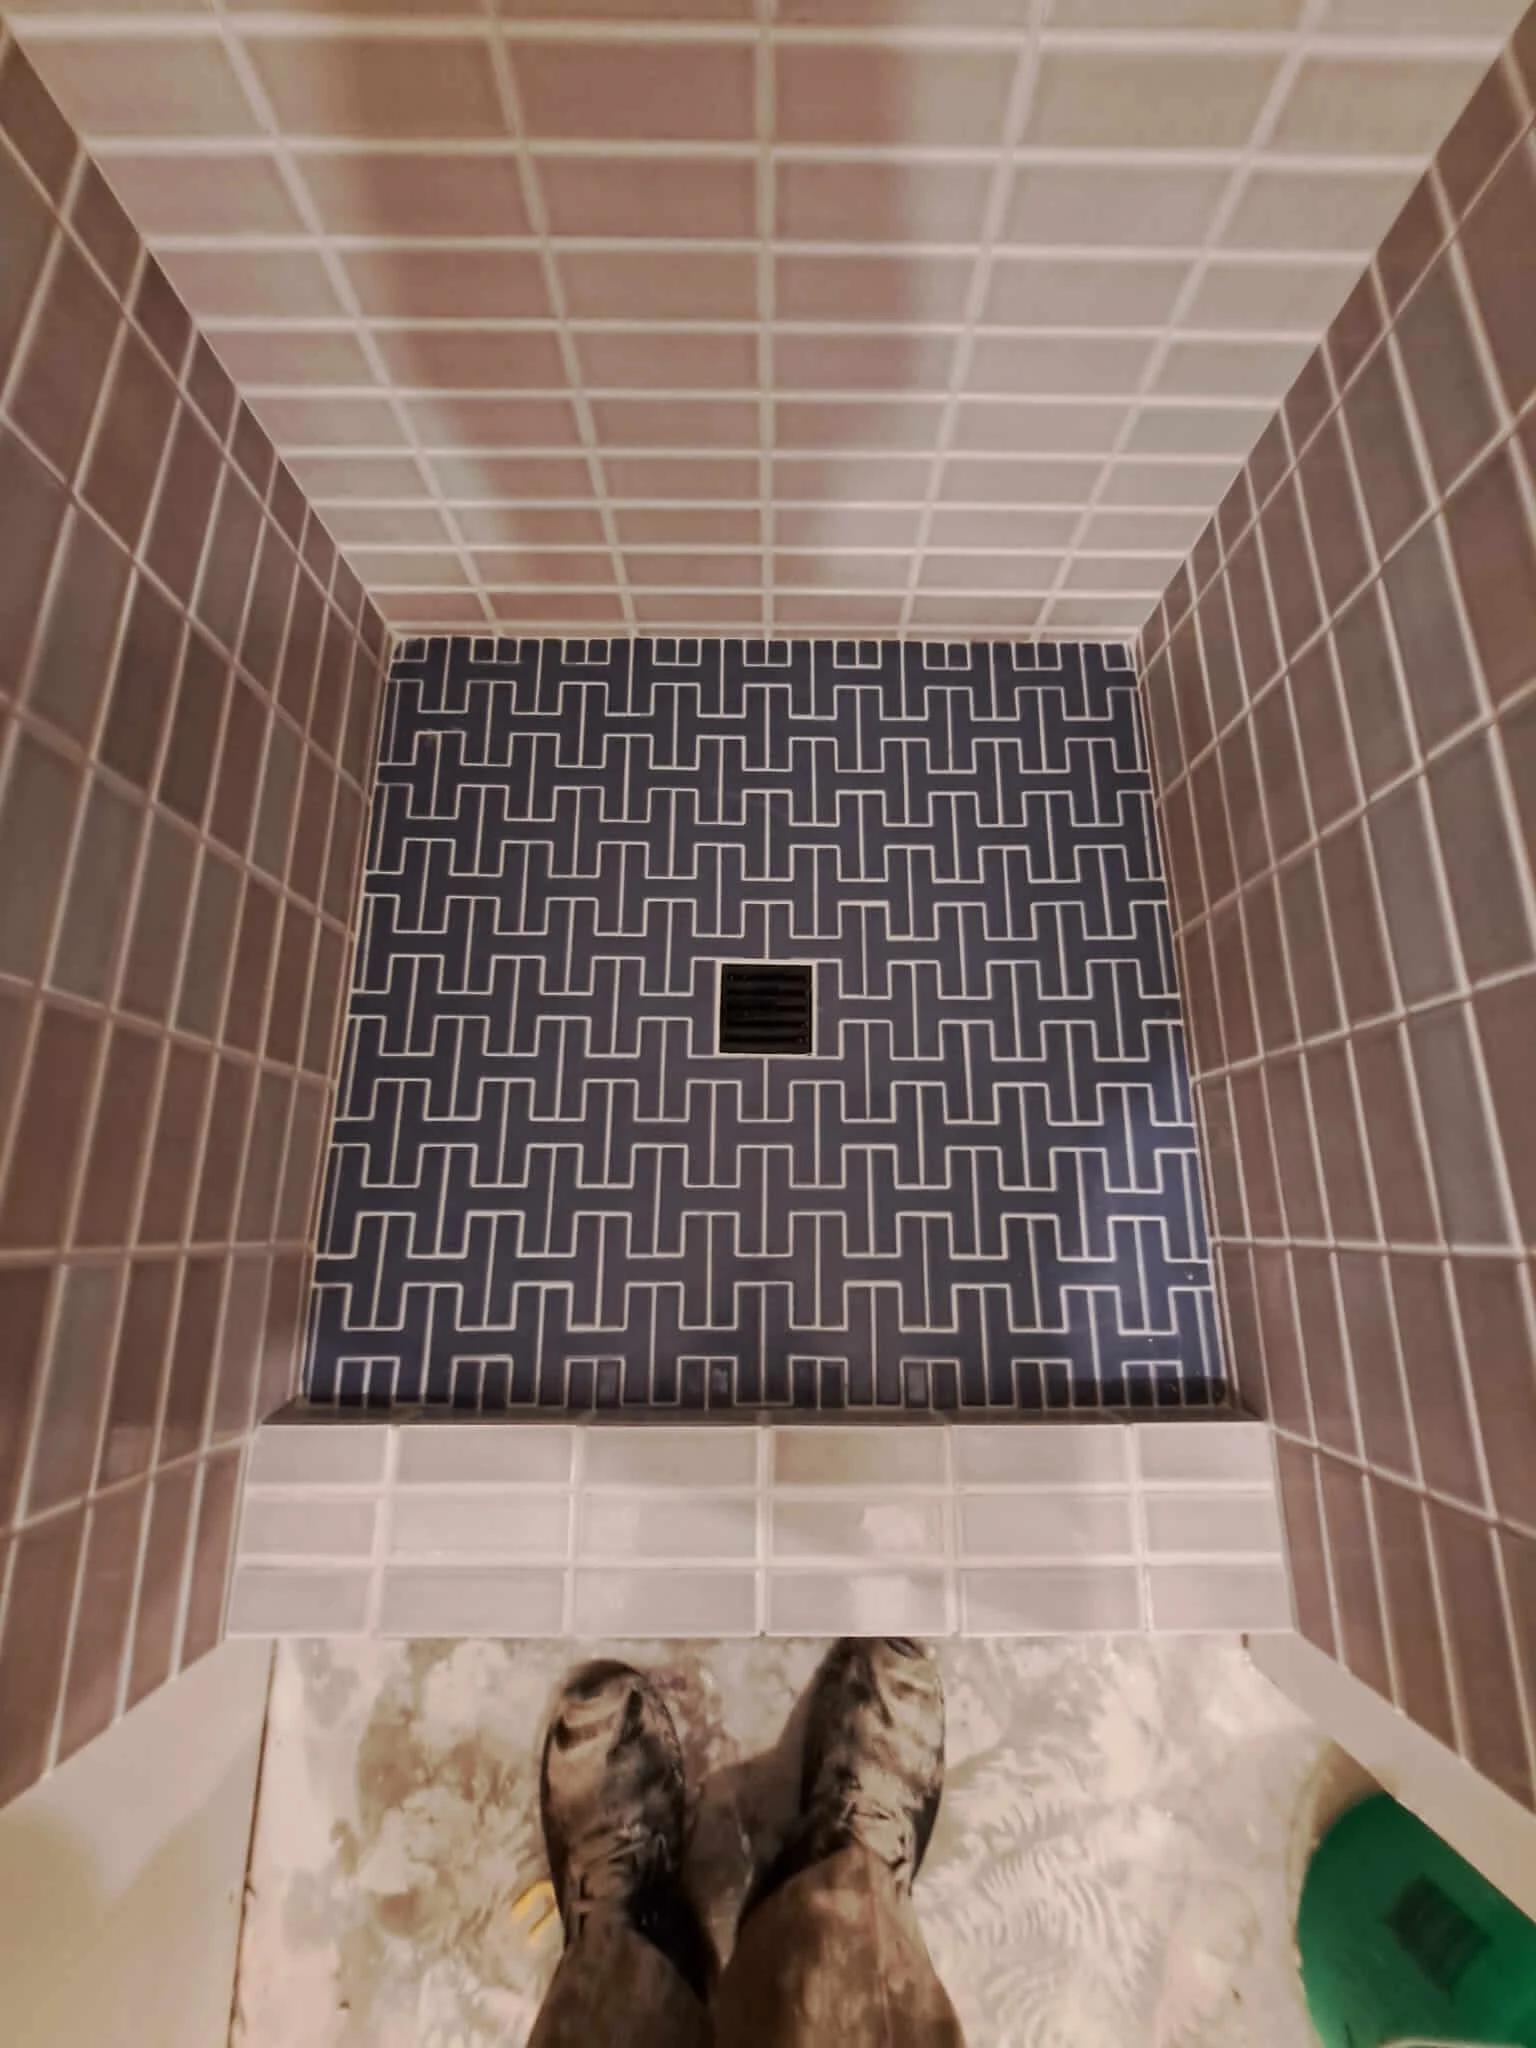 989-unique-shower-floor-16909245315365.jpg